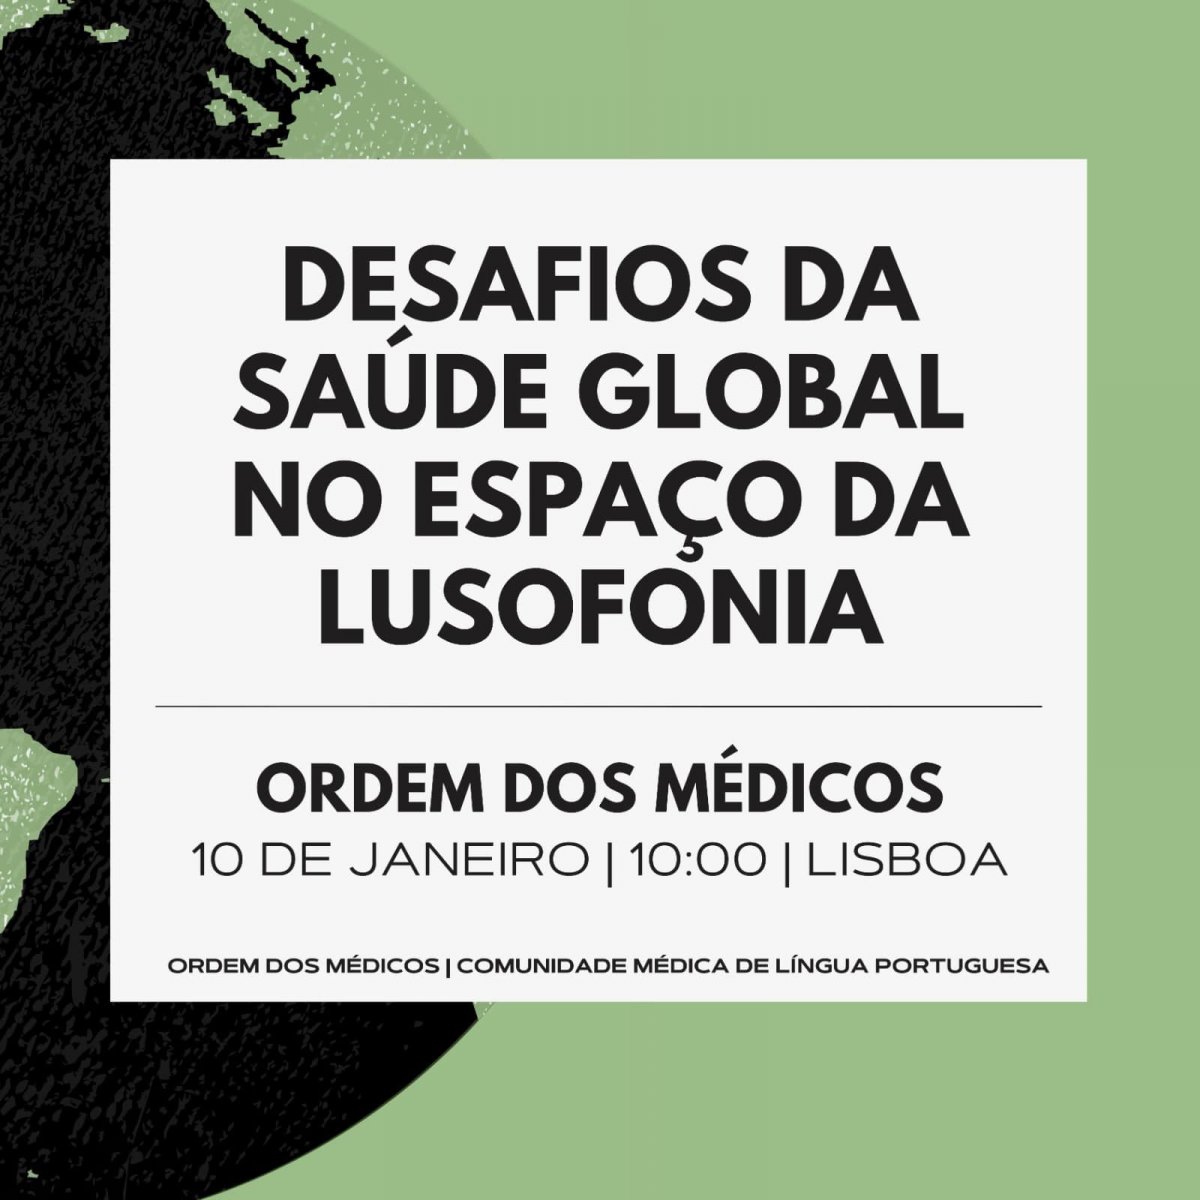 Conferência “Desafios da Saúde Global no Espaço da Lusofonia”